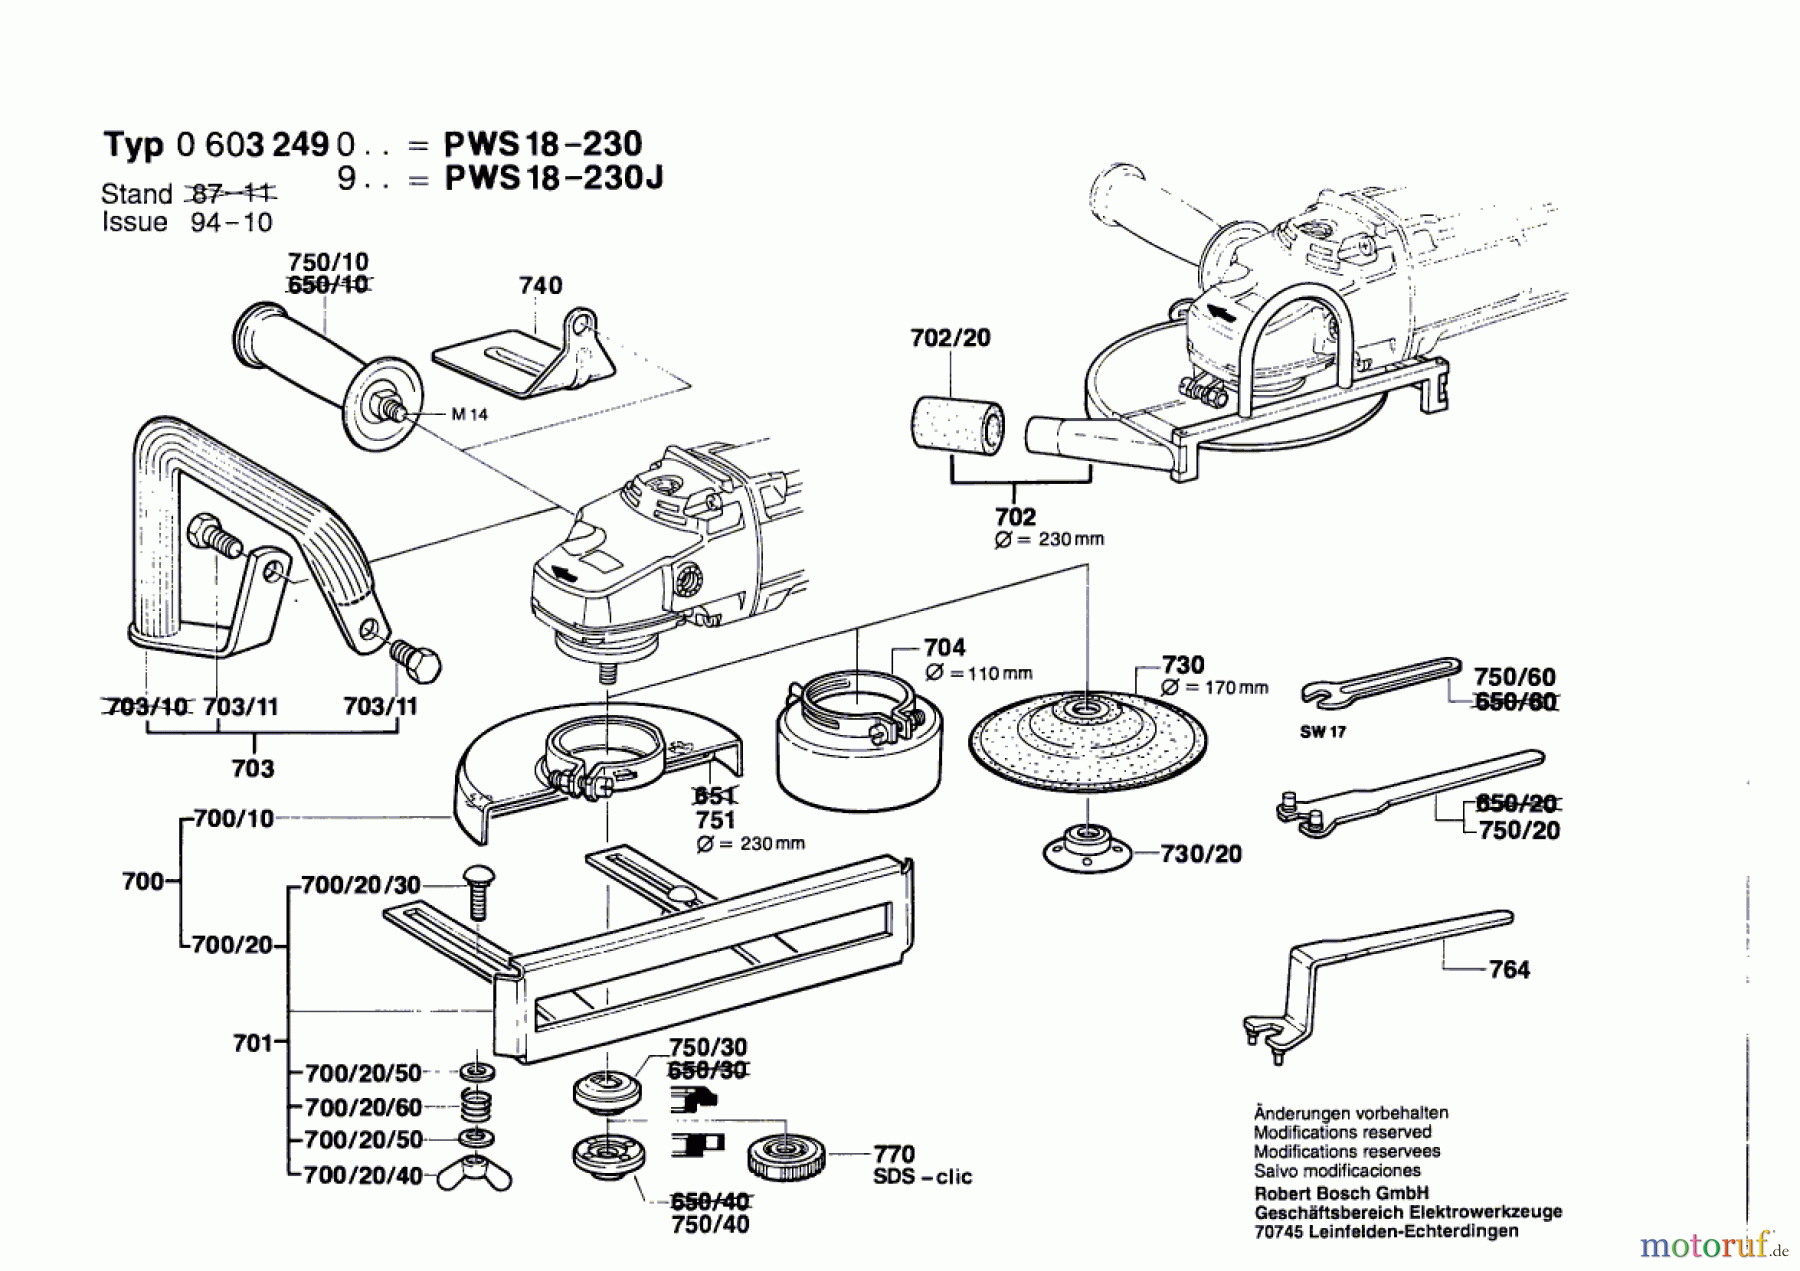  Bosch Werkzeug Winkelschleifer PWS 18-230 J Seite 2